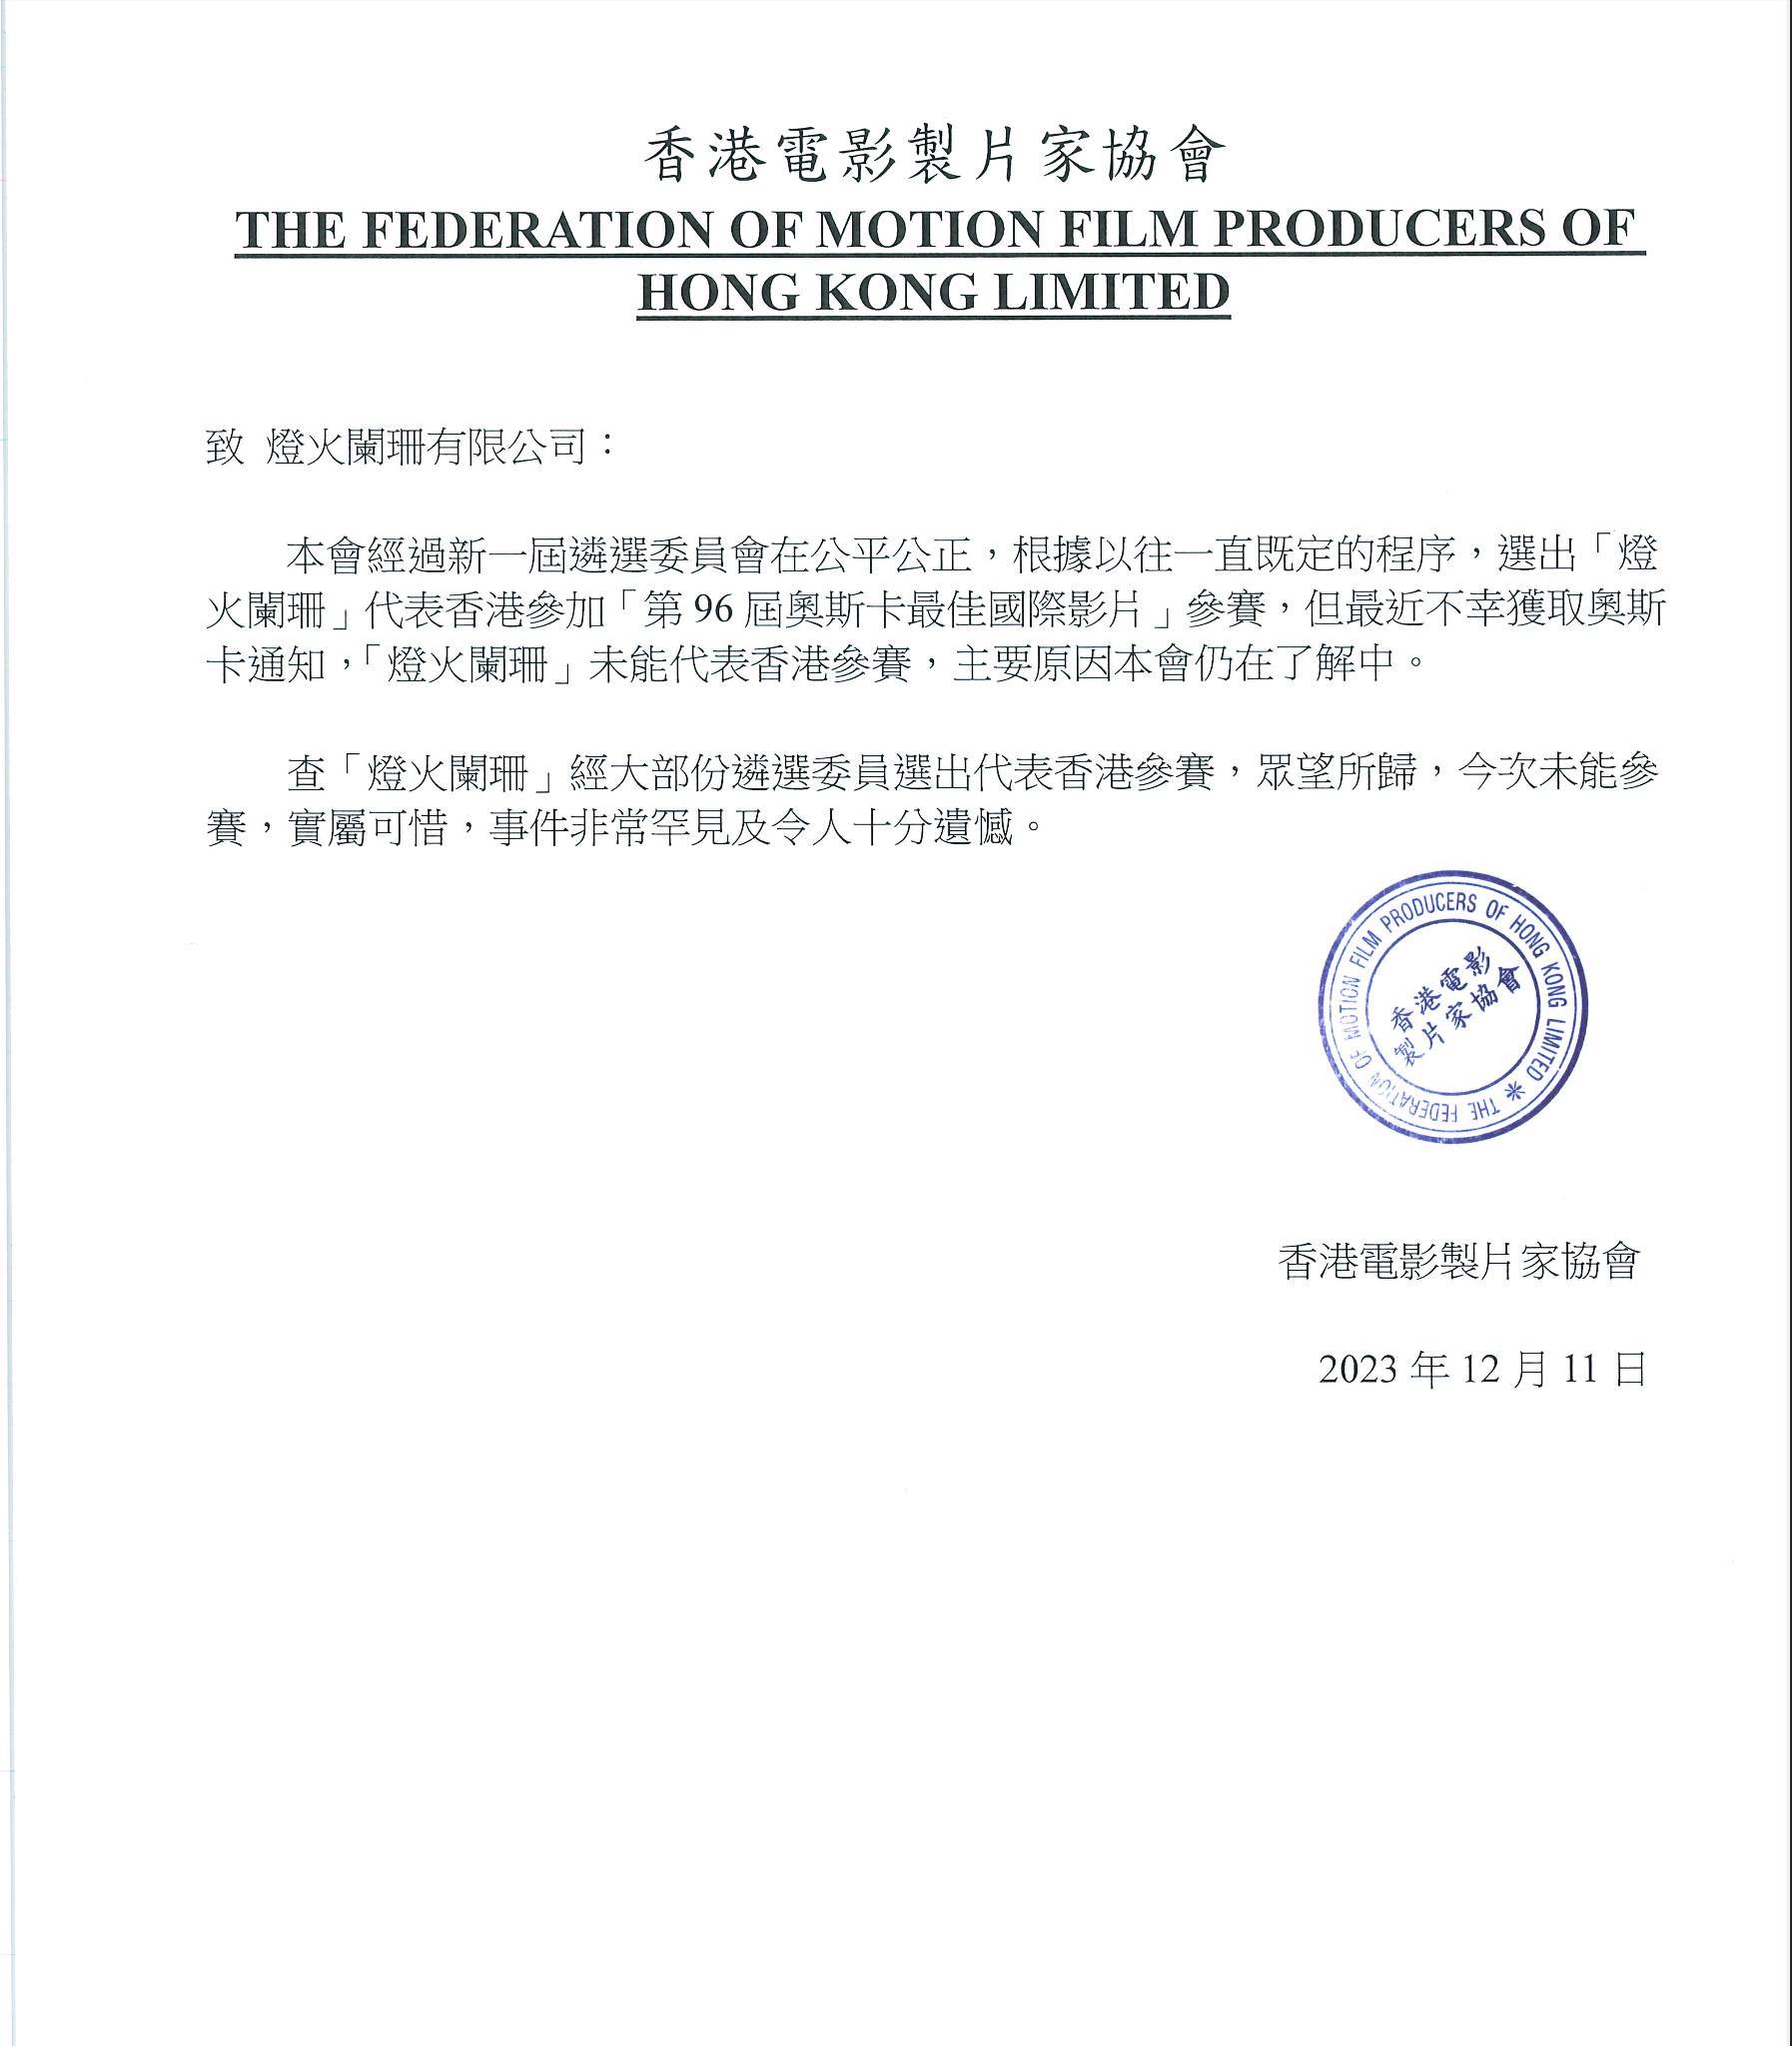 《燈火闌珊》劇組PO出香港電影製片家協會聲明，證實遭奧斯卡取消參賽「最佳國際影片」資格。